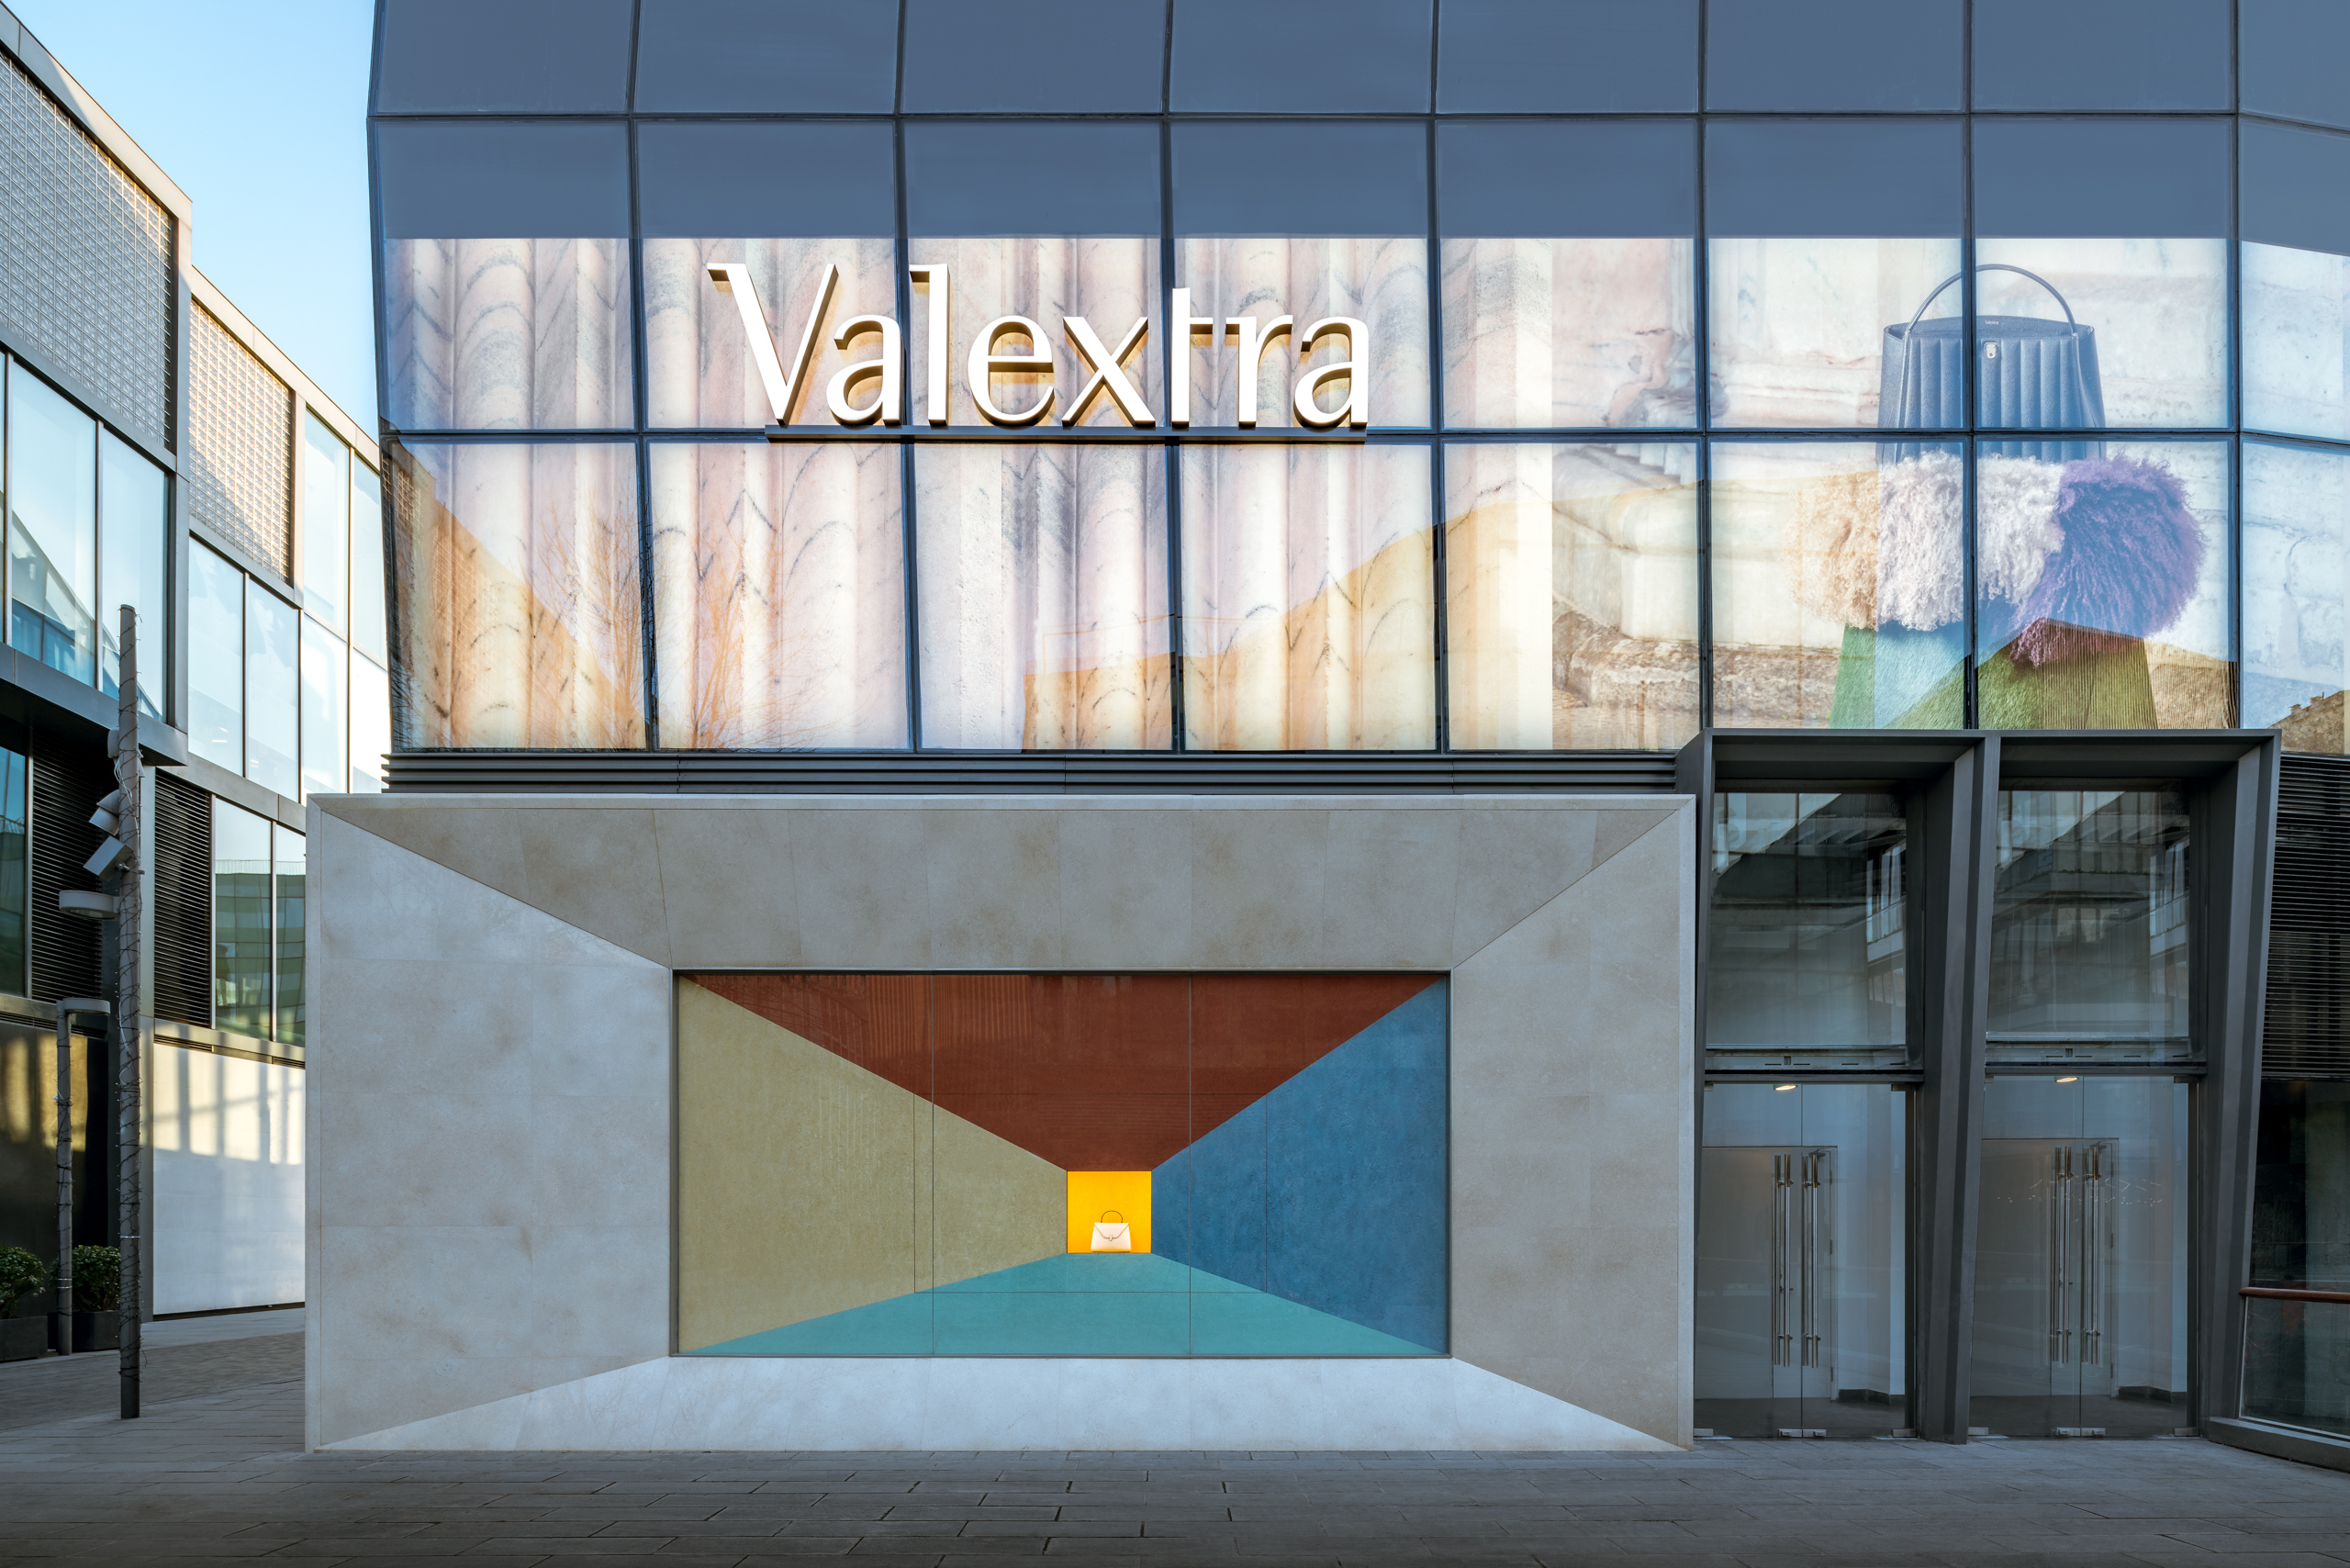 奢侈品不能偷工減料！我們要打造一個永留於世的品牌_專訪義大利頂級皮具品牌Valextra全球CEO_08.jpg